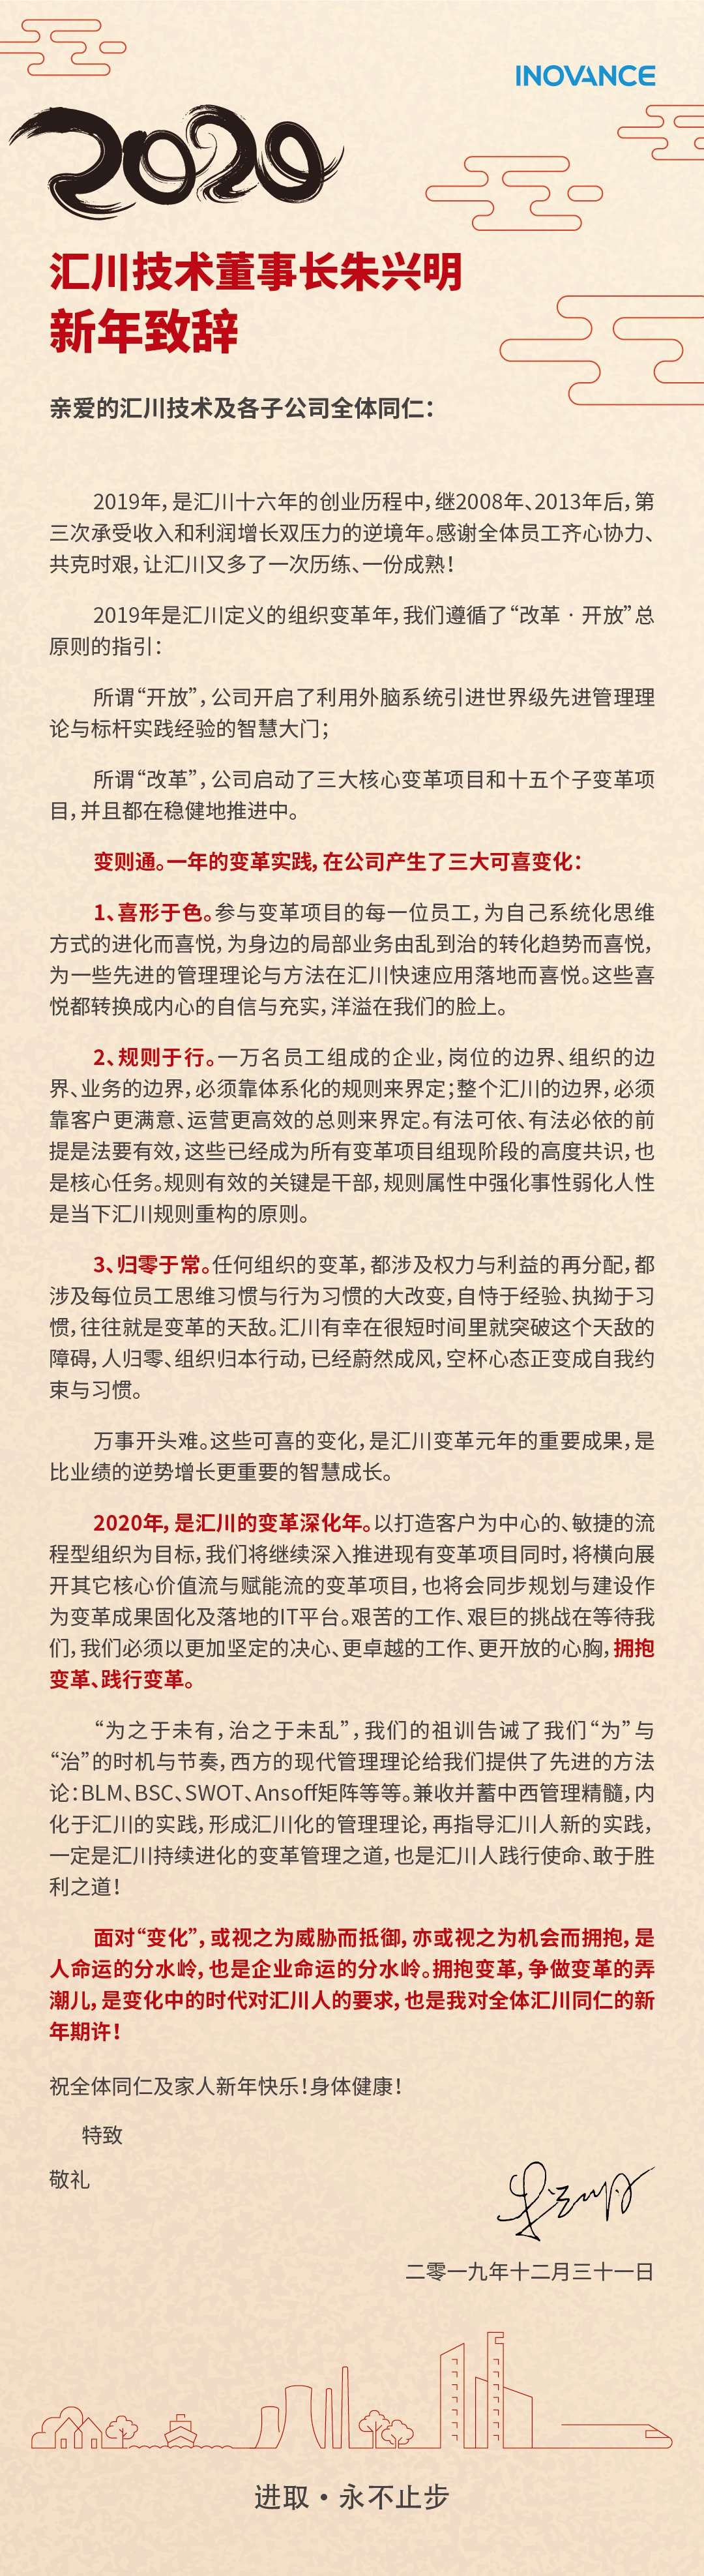 汇川技术董事长朱兴明2020年新年致辞